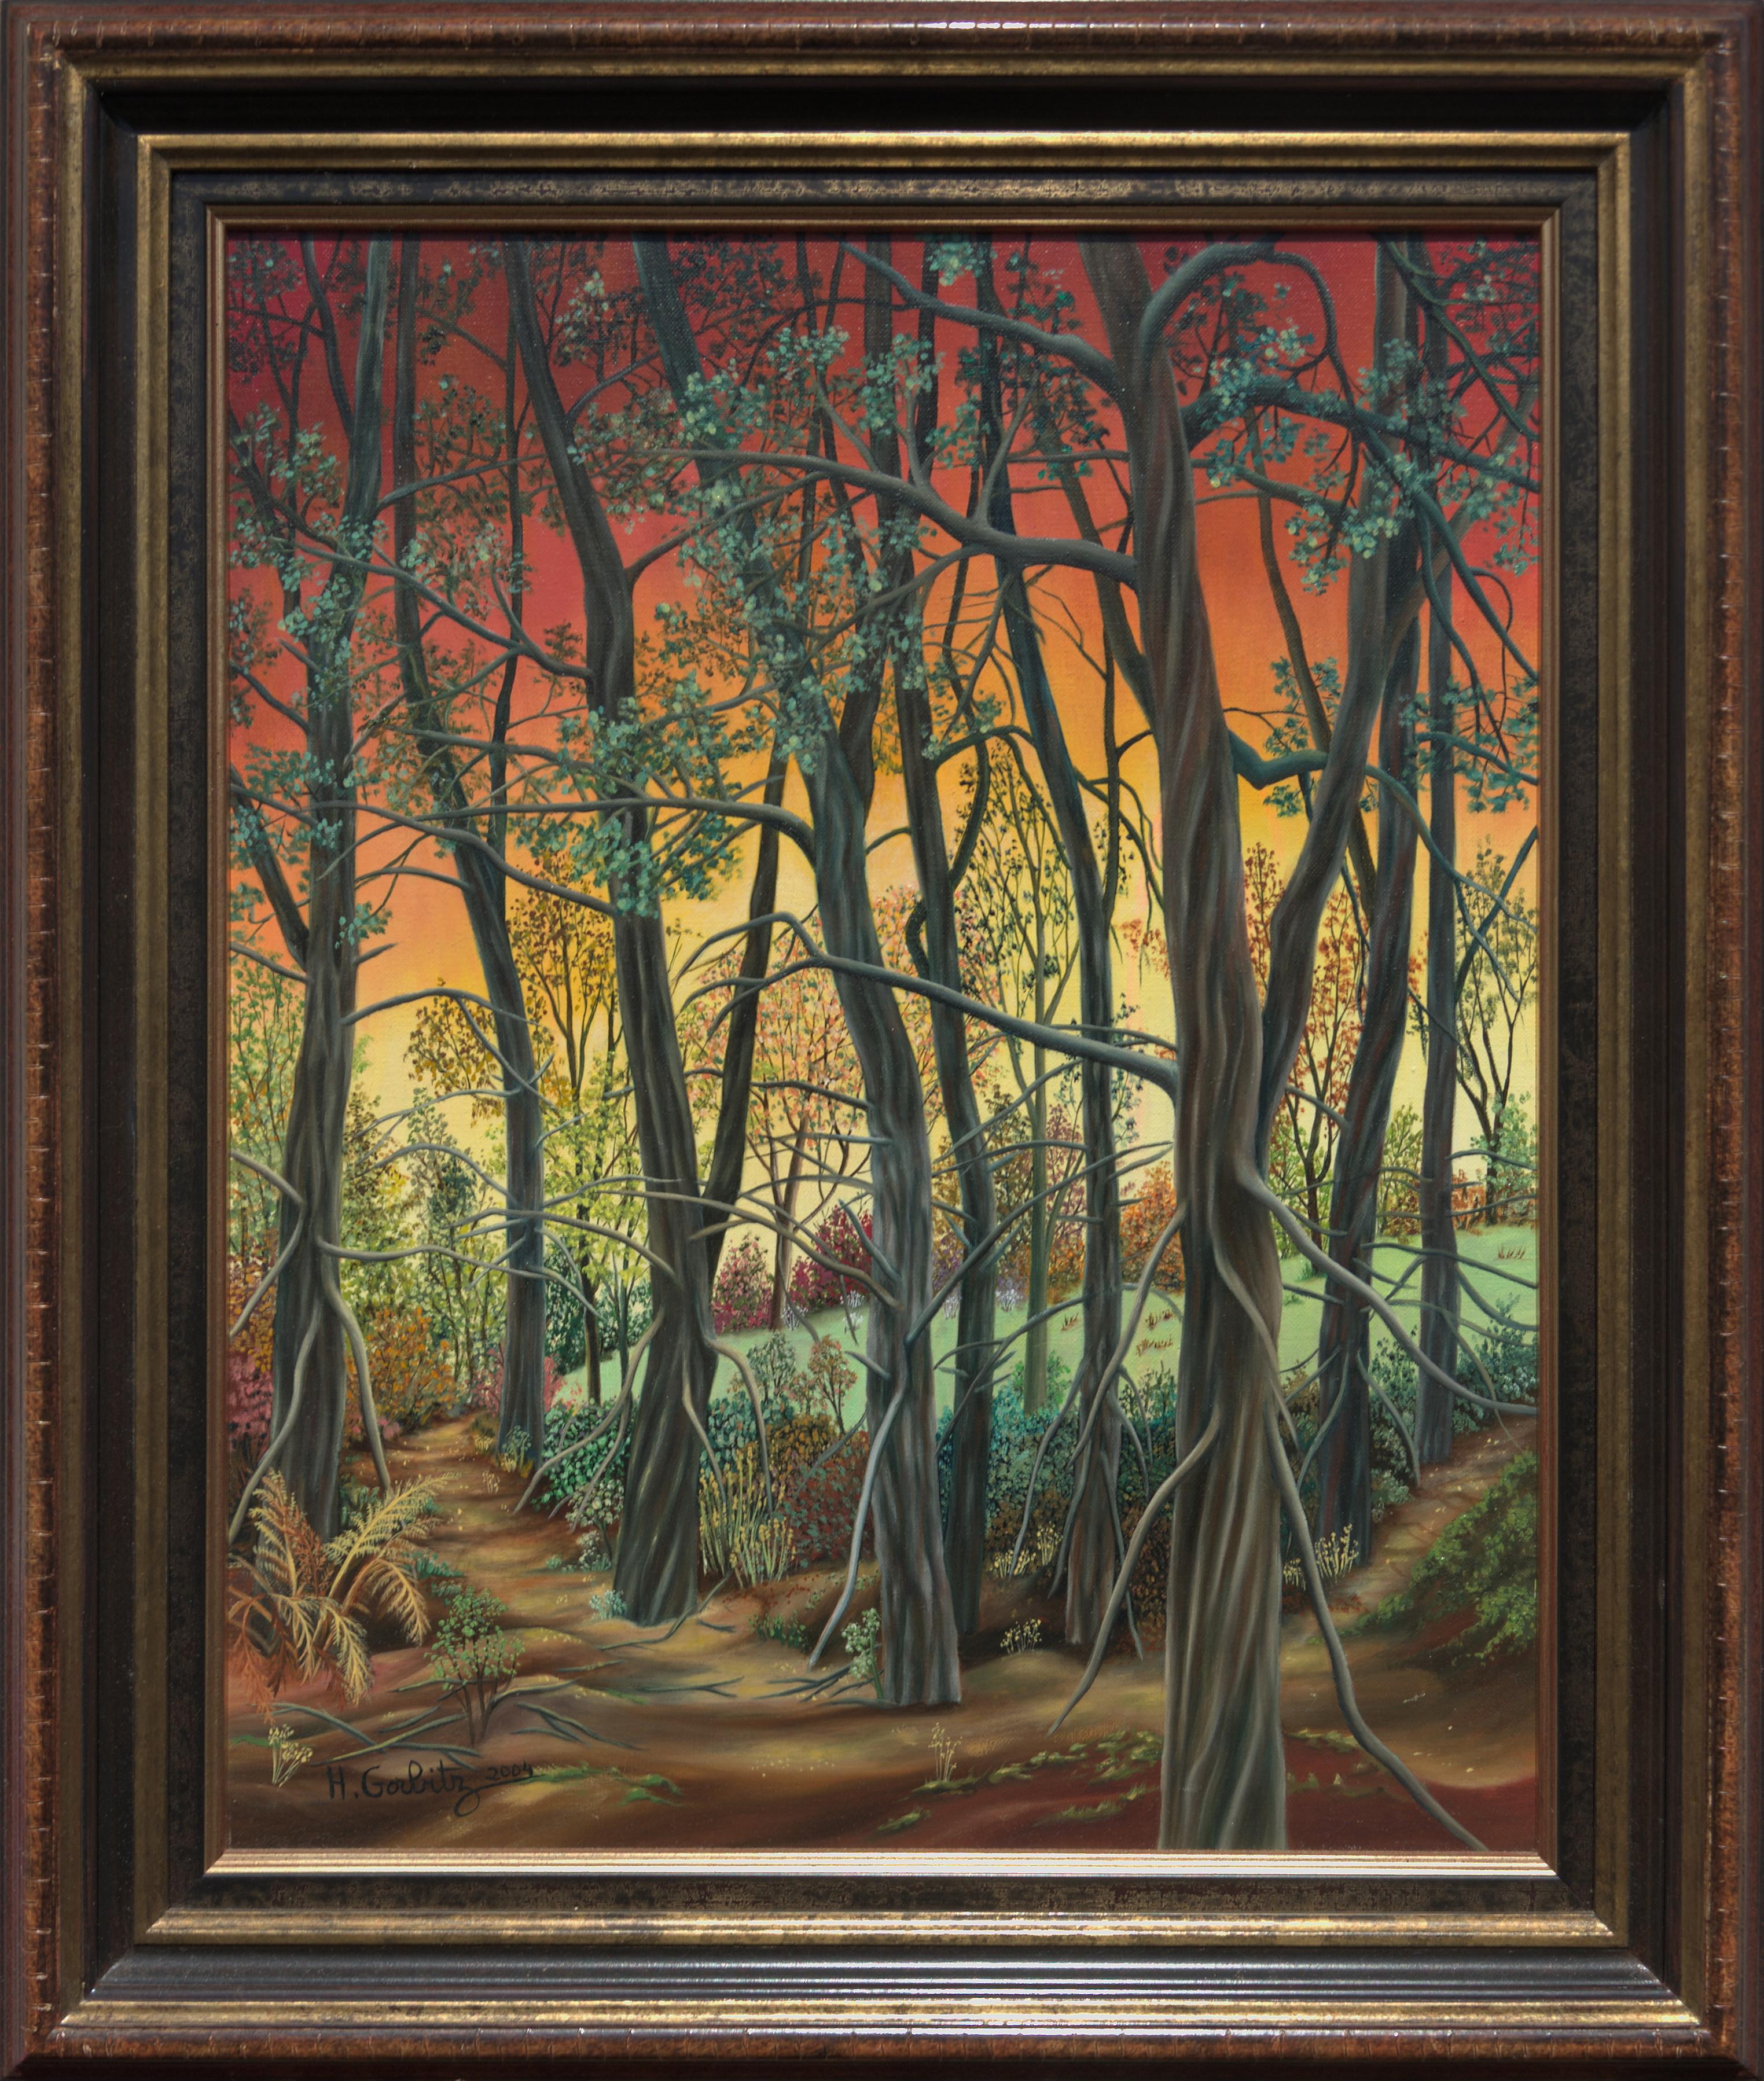 Henriette Gorbitz Figurative Painting - "Forest", Deciduous Trees at Sunset Landscape Naive/Primitivist Acrylic Painting